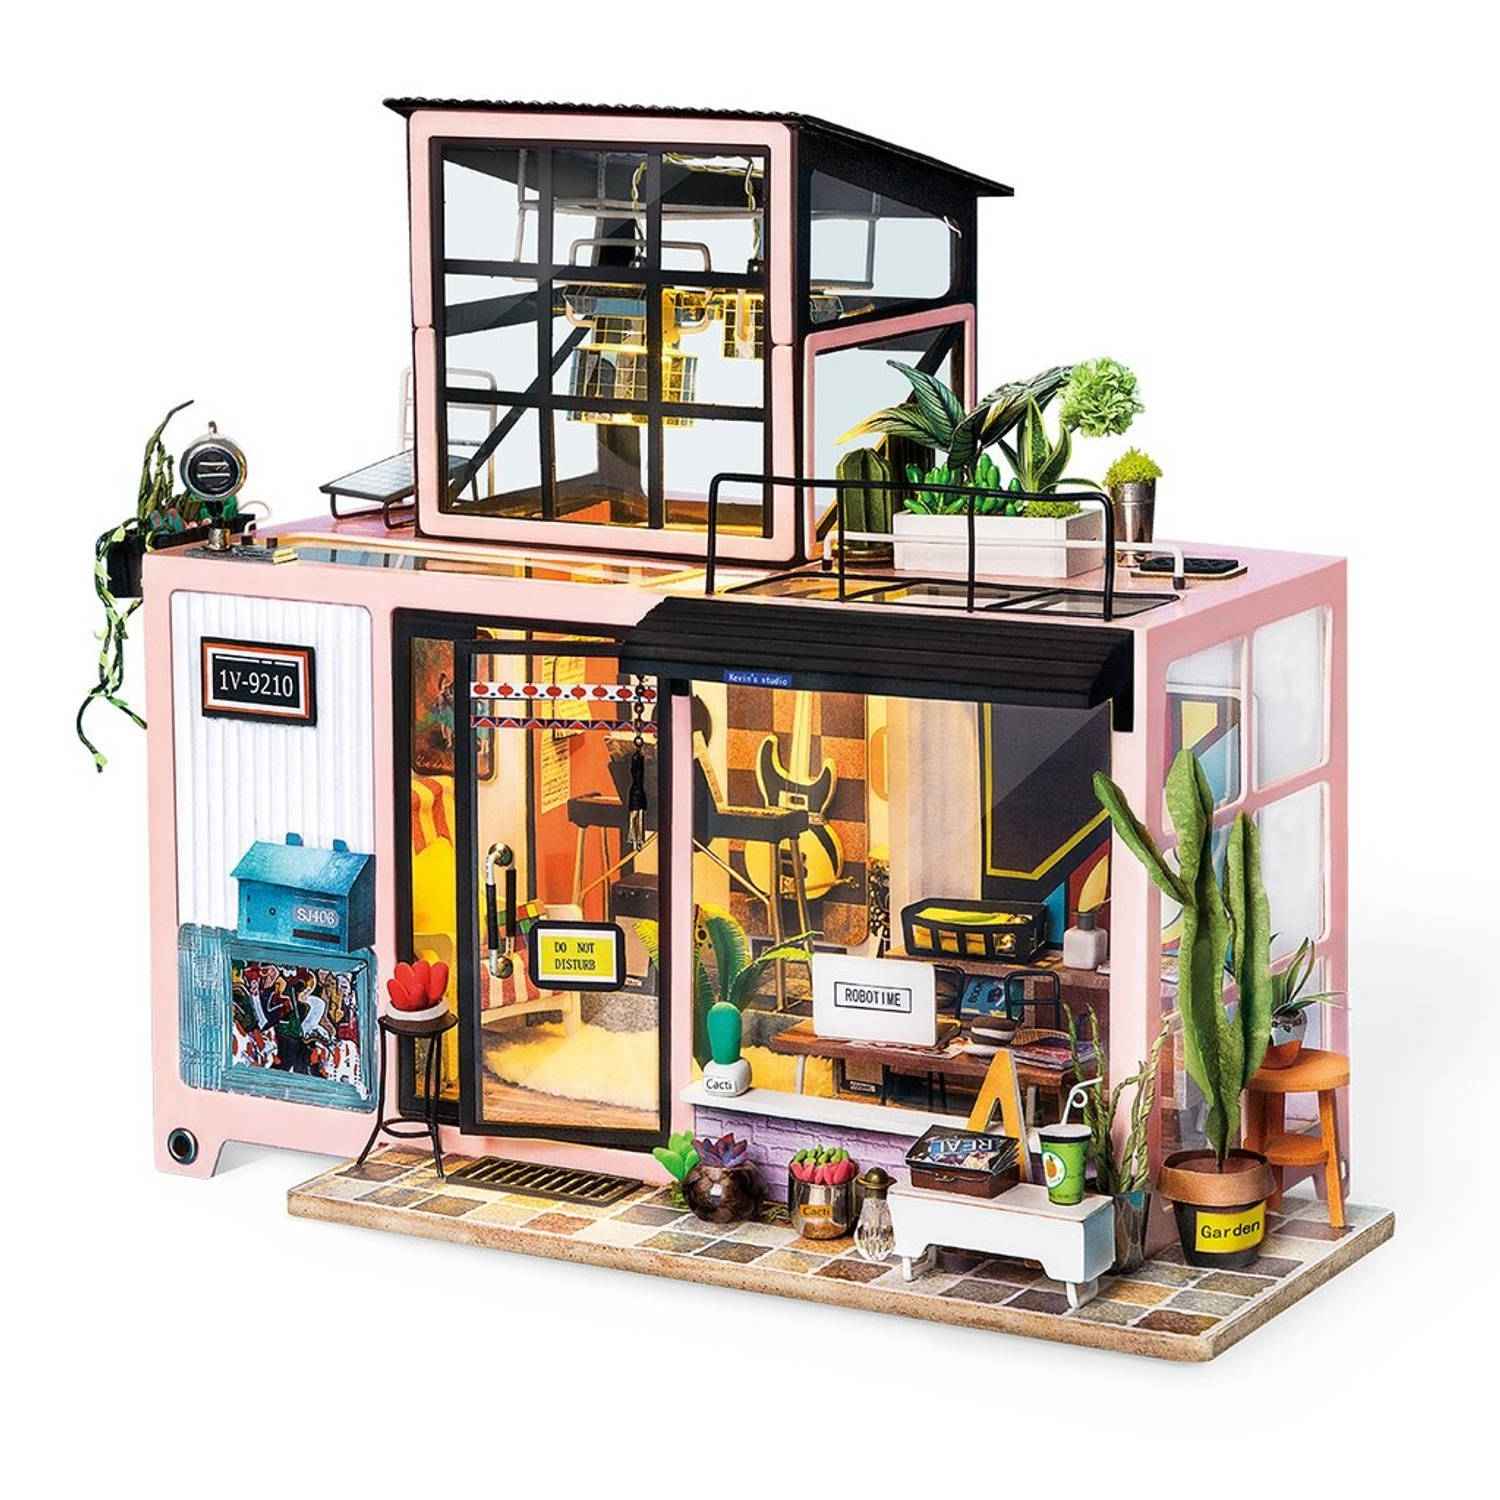 Robotime DIY modelbouw Miniatuur Bouwpakket Kevin's Studio House 25 x 20 x 16cm - met lampje